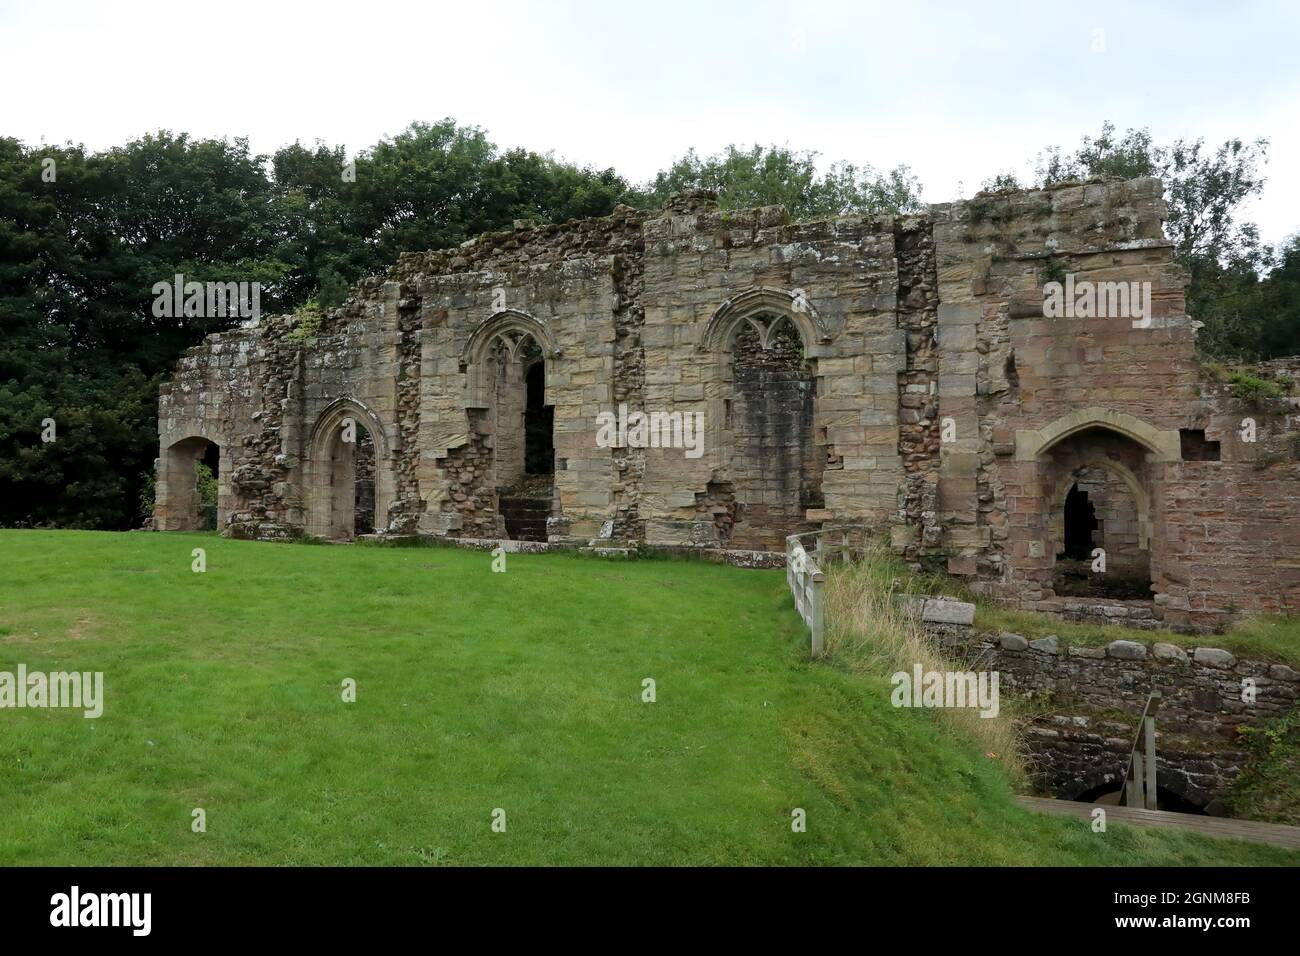 23 septembre 2021 : vue sur le château de Spofforth à Spofforth, dans le nord du Yorkshire, en Angleterre, où les barons rebelles ont reputé la Magna Carta en 1215 Banque D'Images